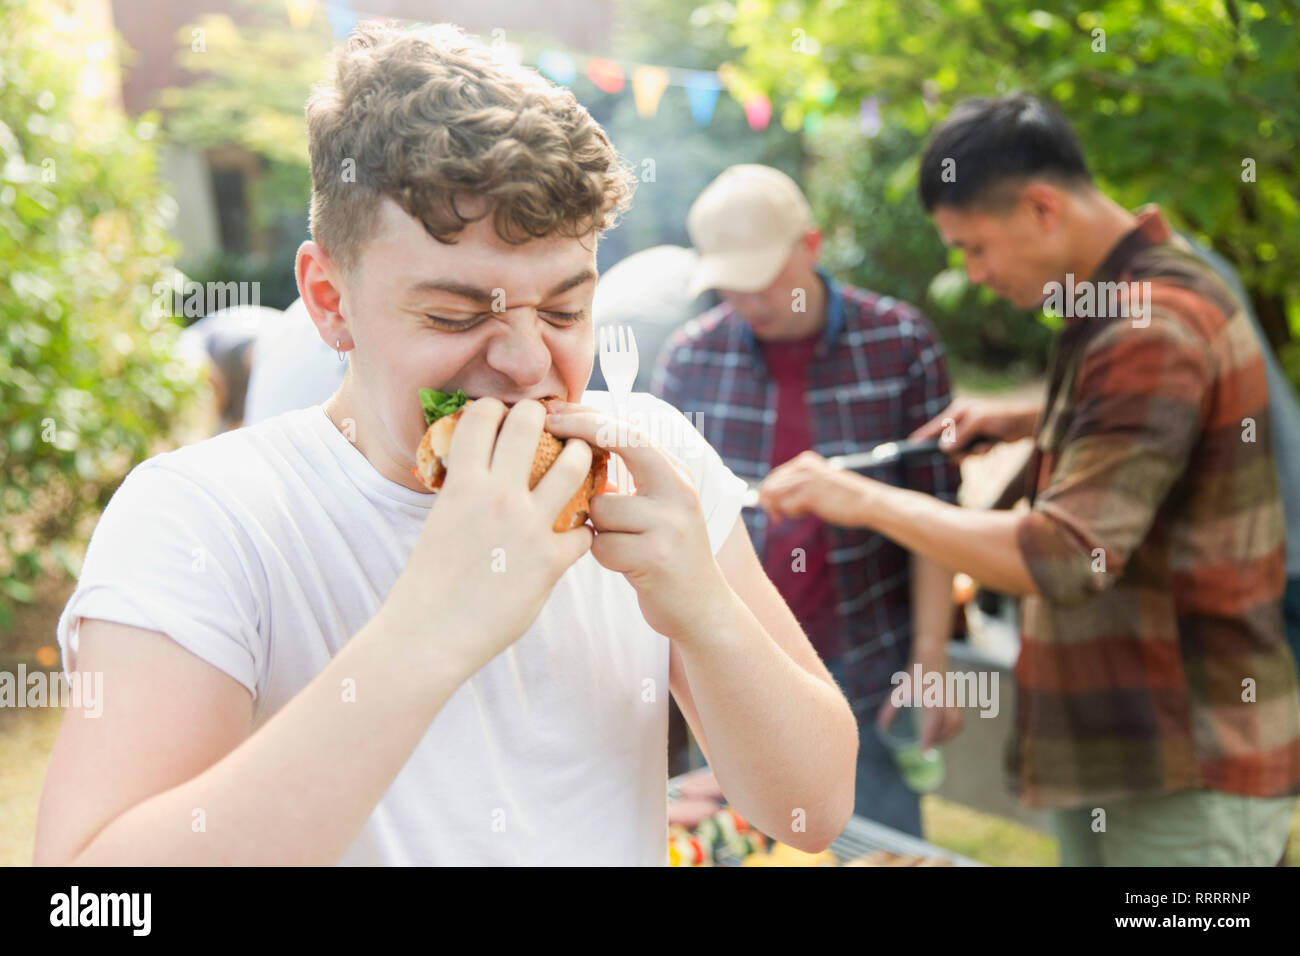 Hungry teenage boy eating hamburger at backyard barbecue Stock Photo